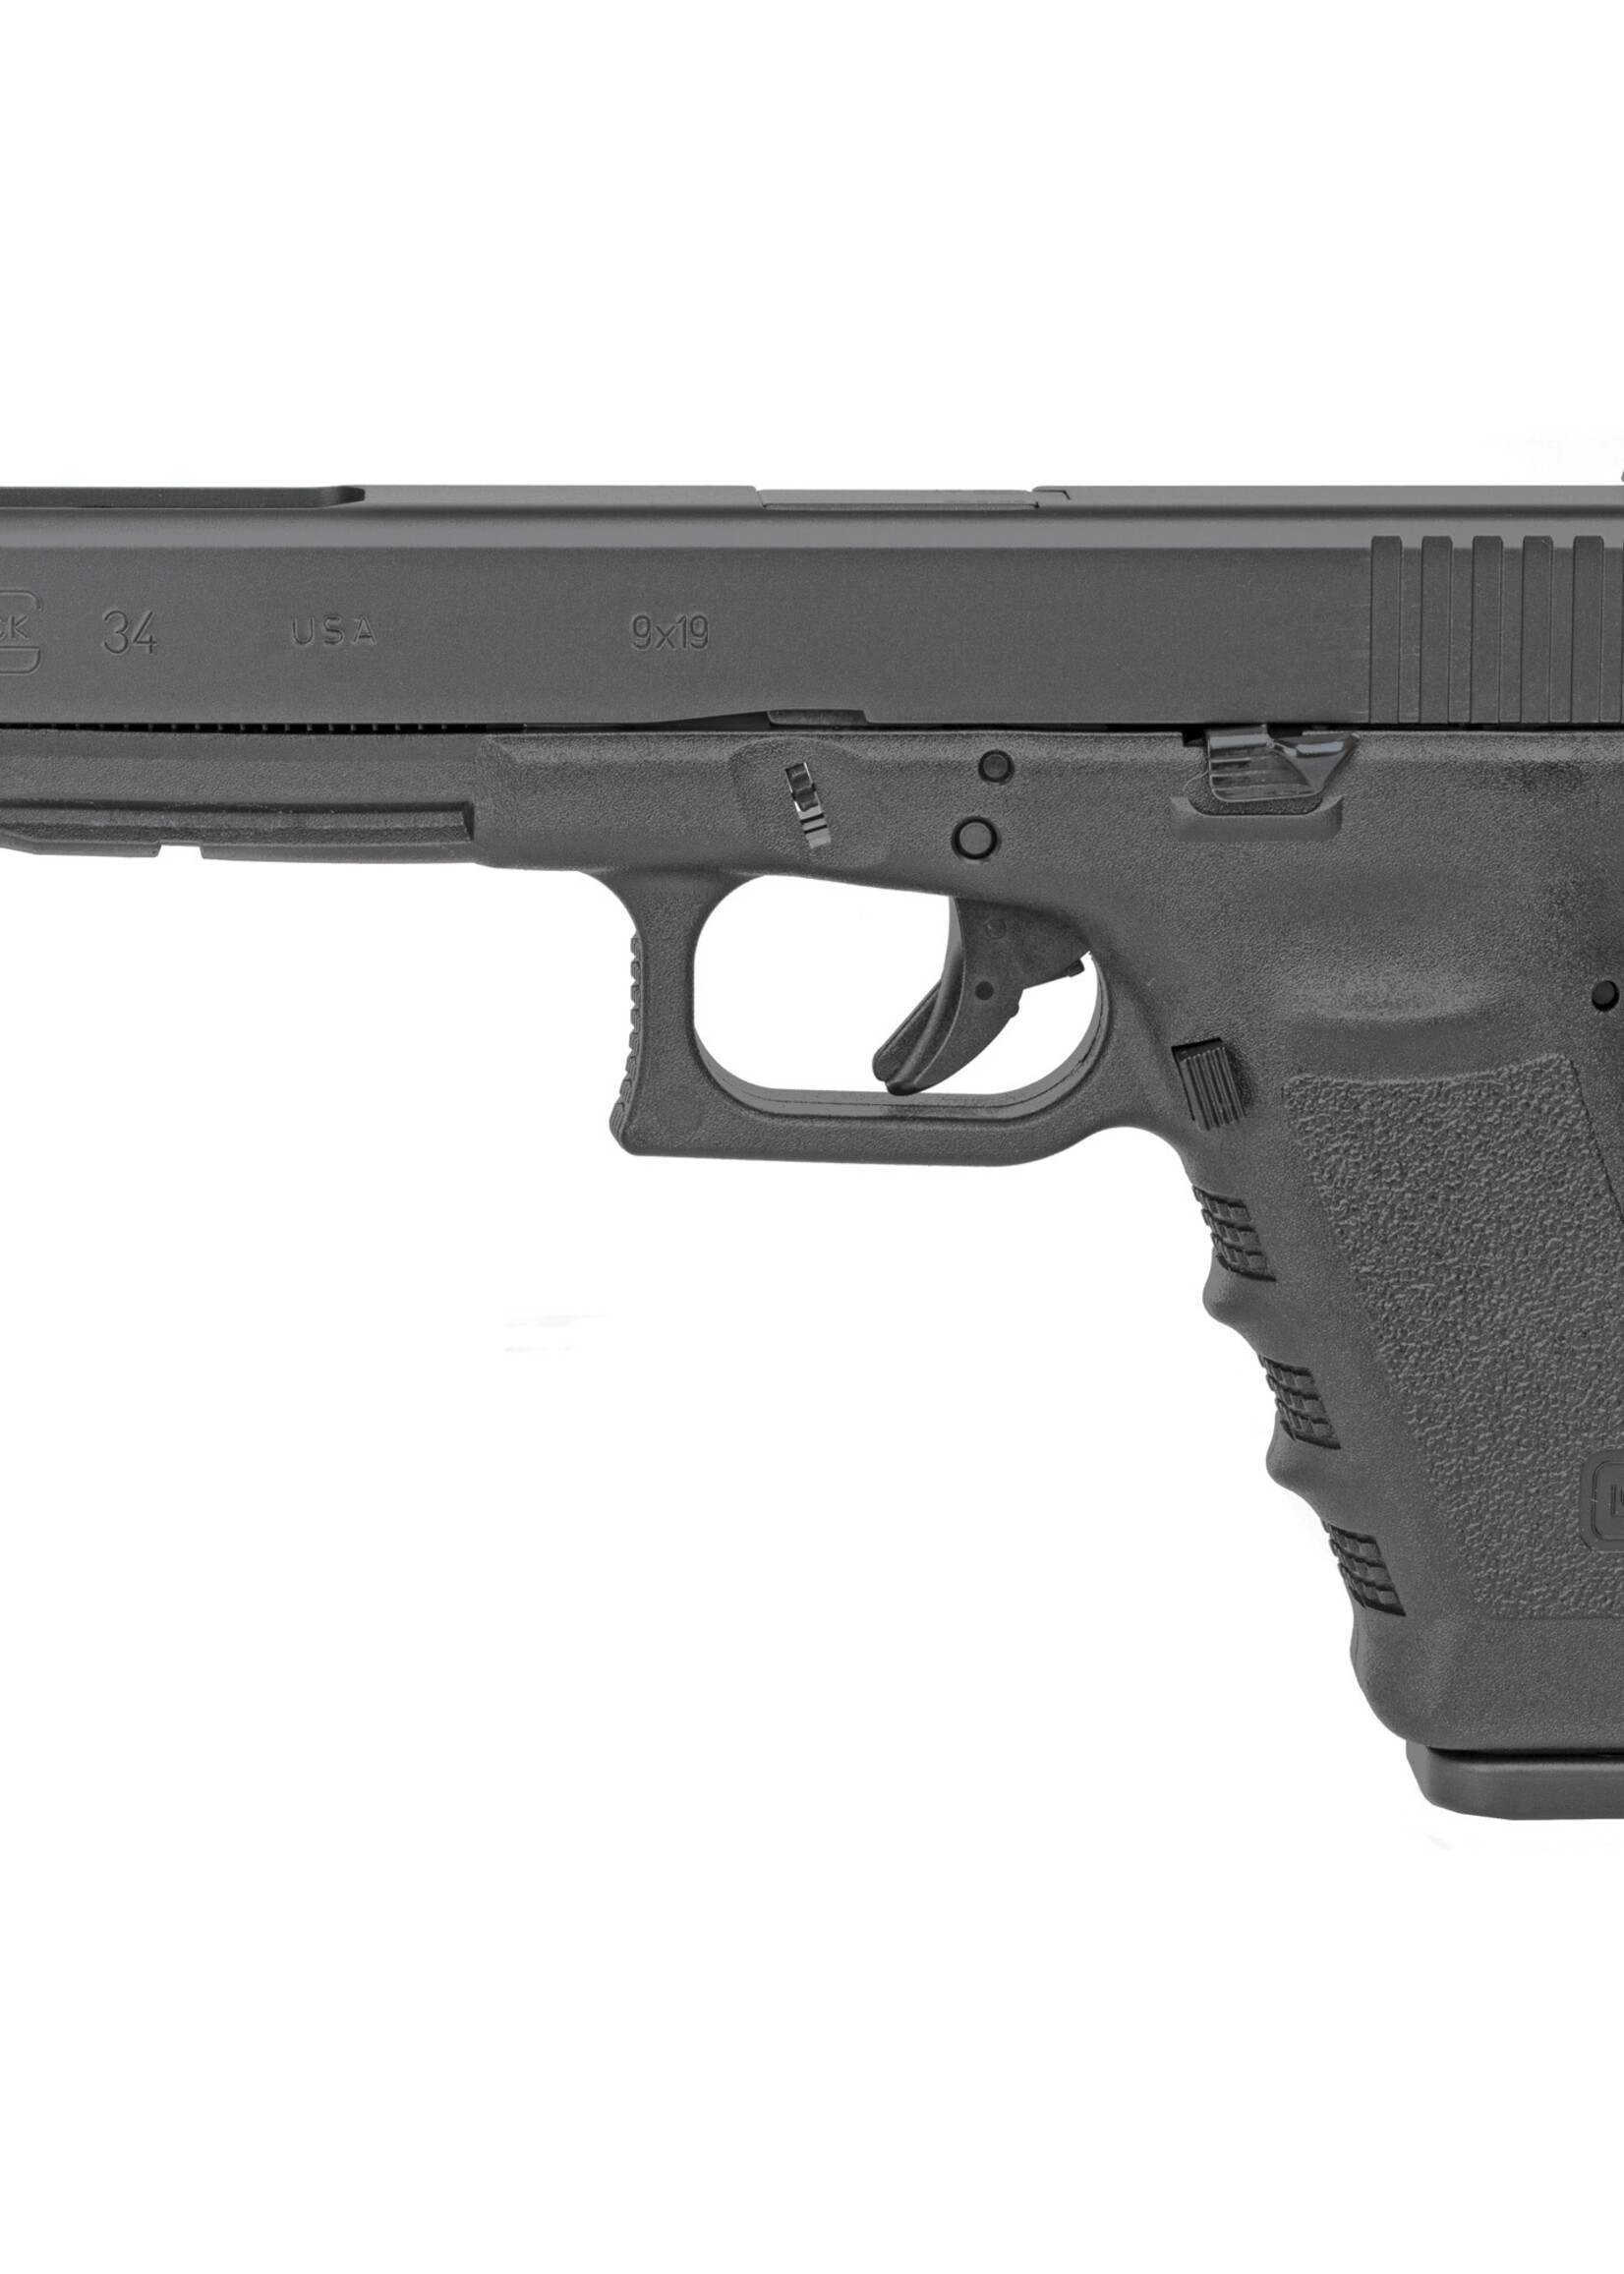 Glock (USED)Glock G34 Gen 3 UI3430103 G34 Gen3 9mm 5.31" Barrel 17+1, Black Frame & Slide, Finger Grooved Grip, Adjustable Sights MFG#  UI3430103  UPC# 764503048746